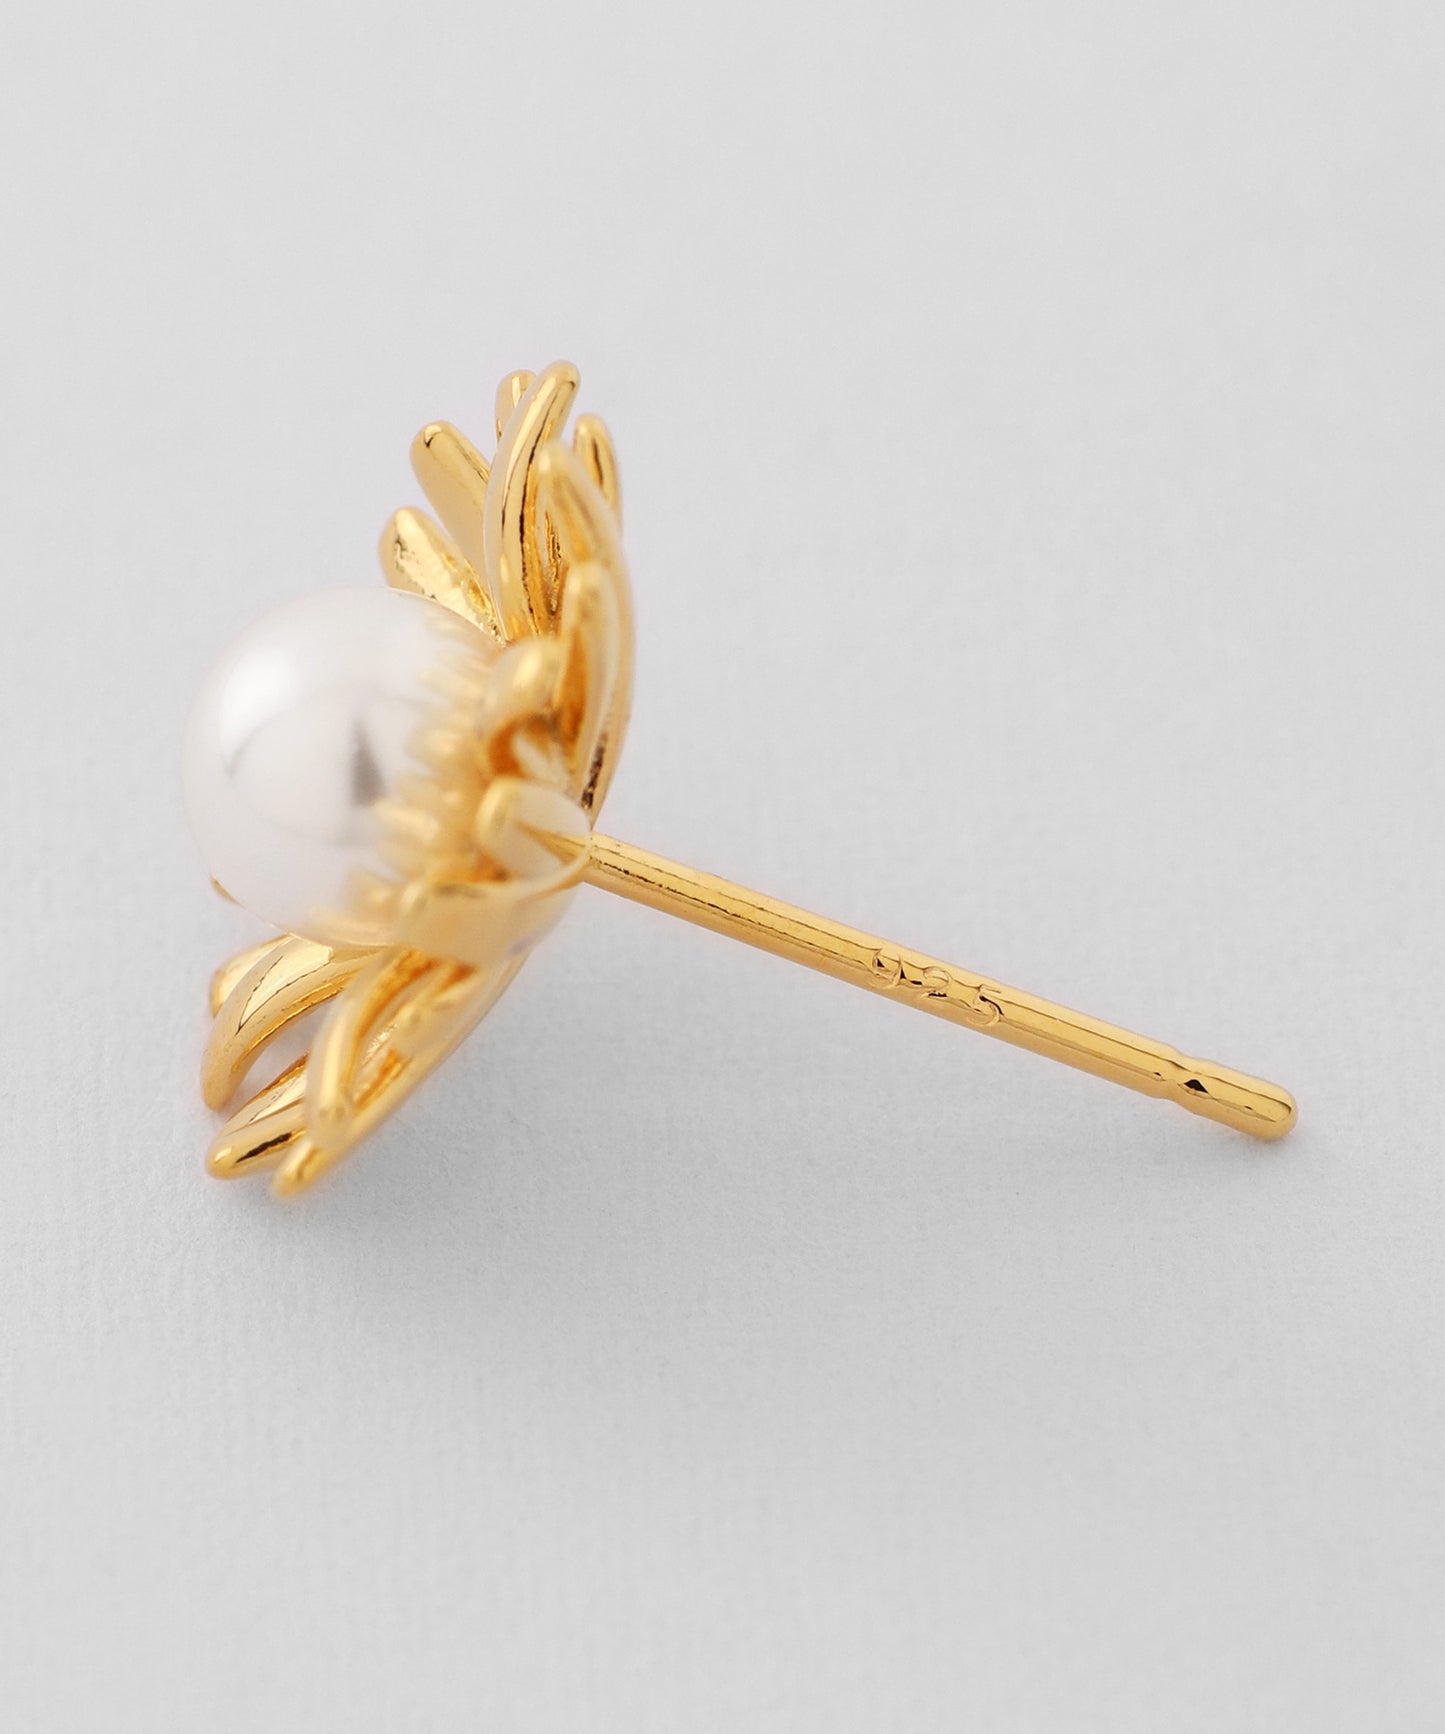 Pearl Flower Earrings [925 Silver]